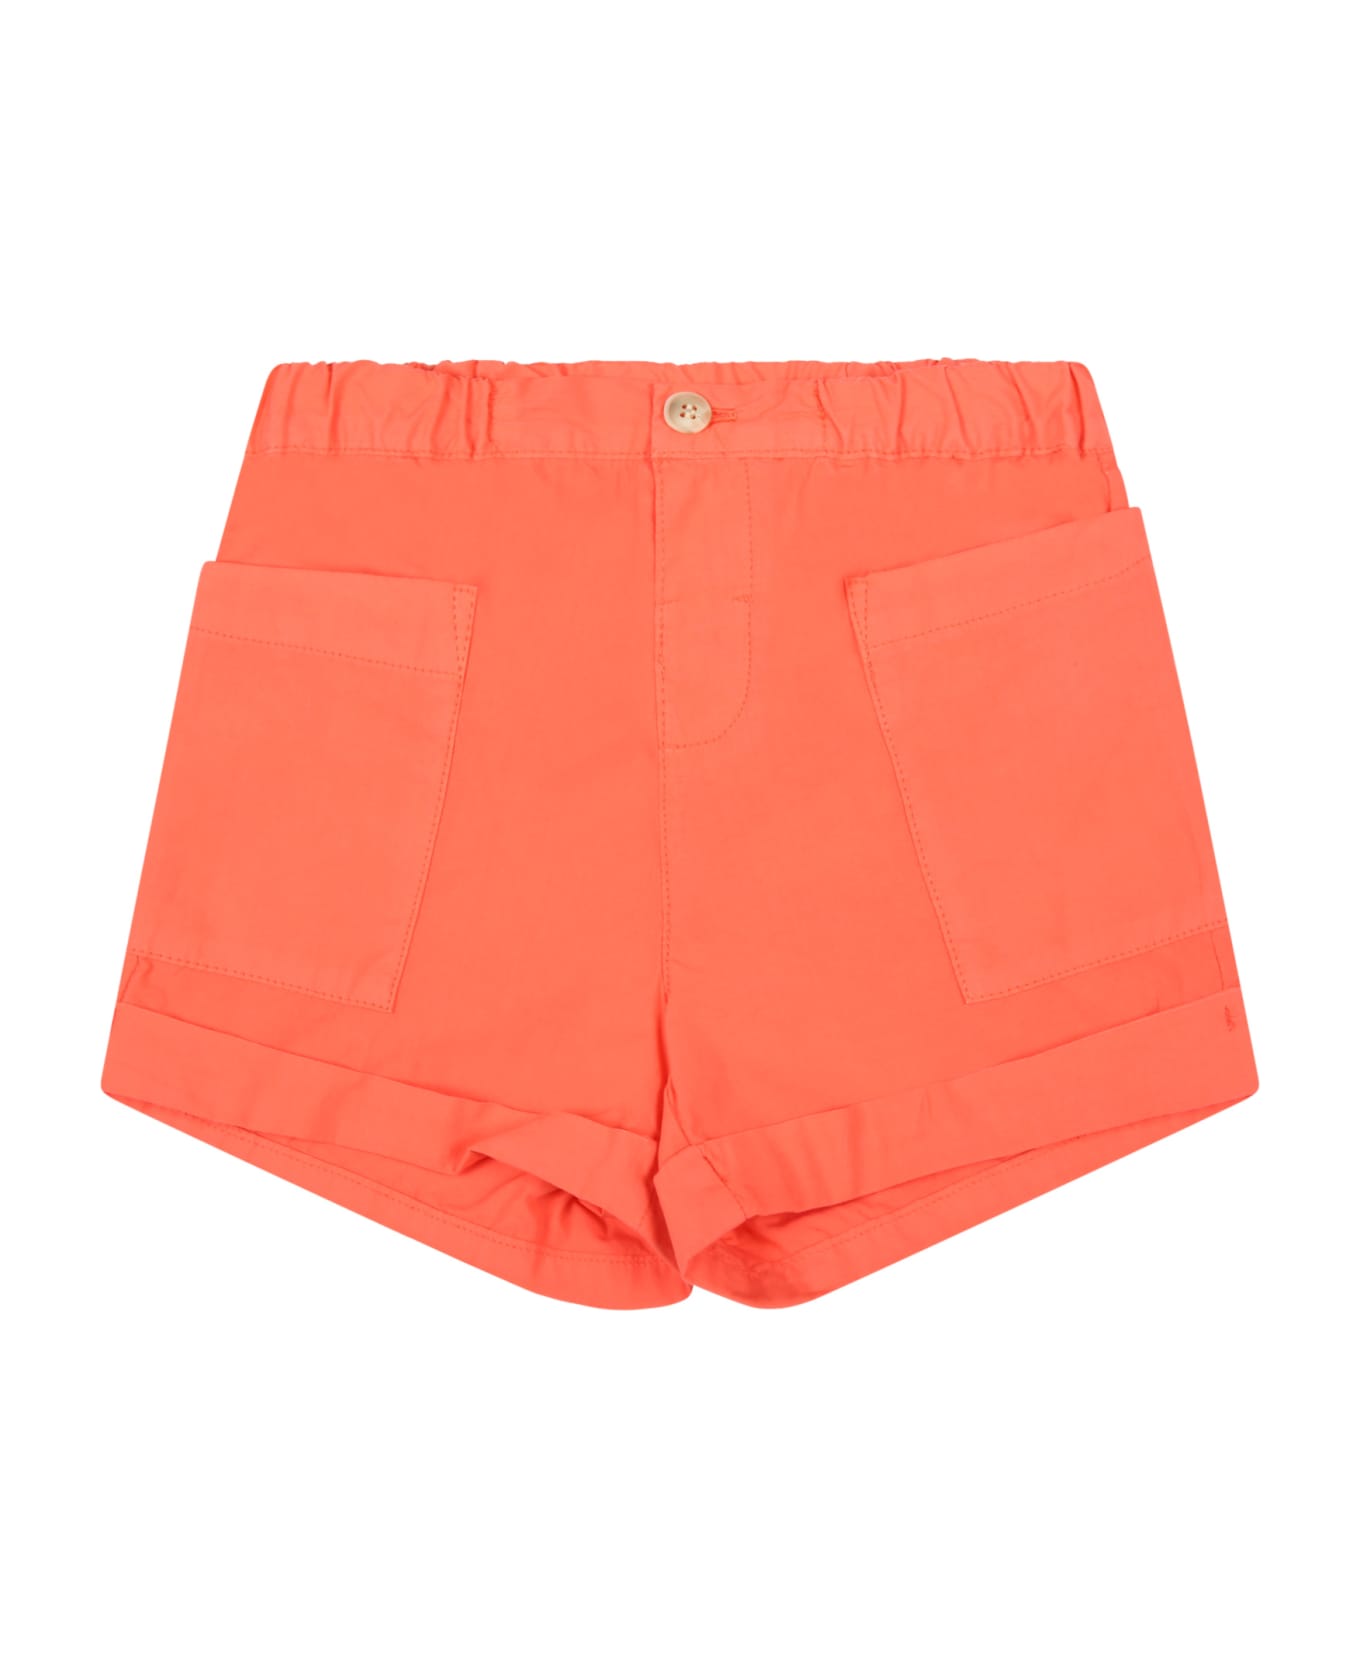 Bonpoint Orange Short For Baby Girl - Orange